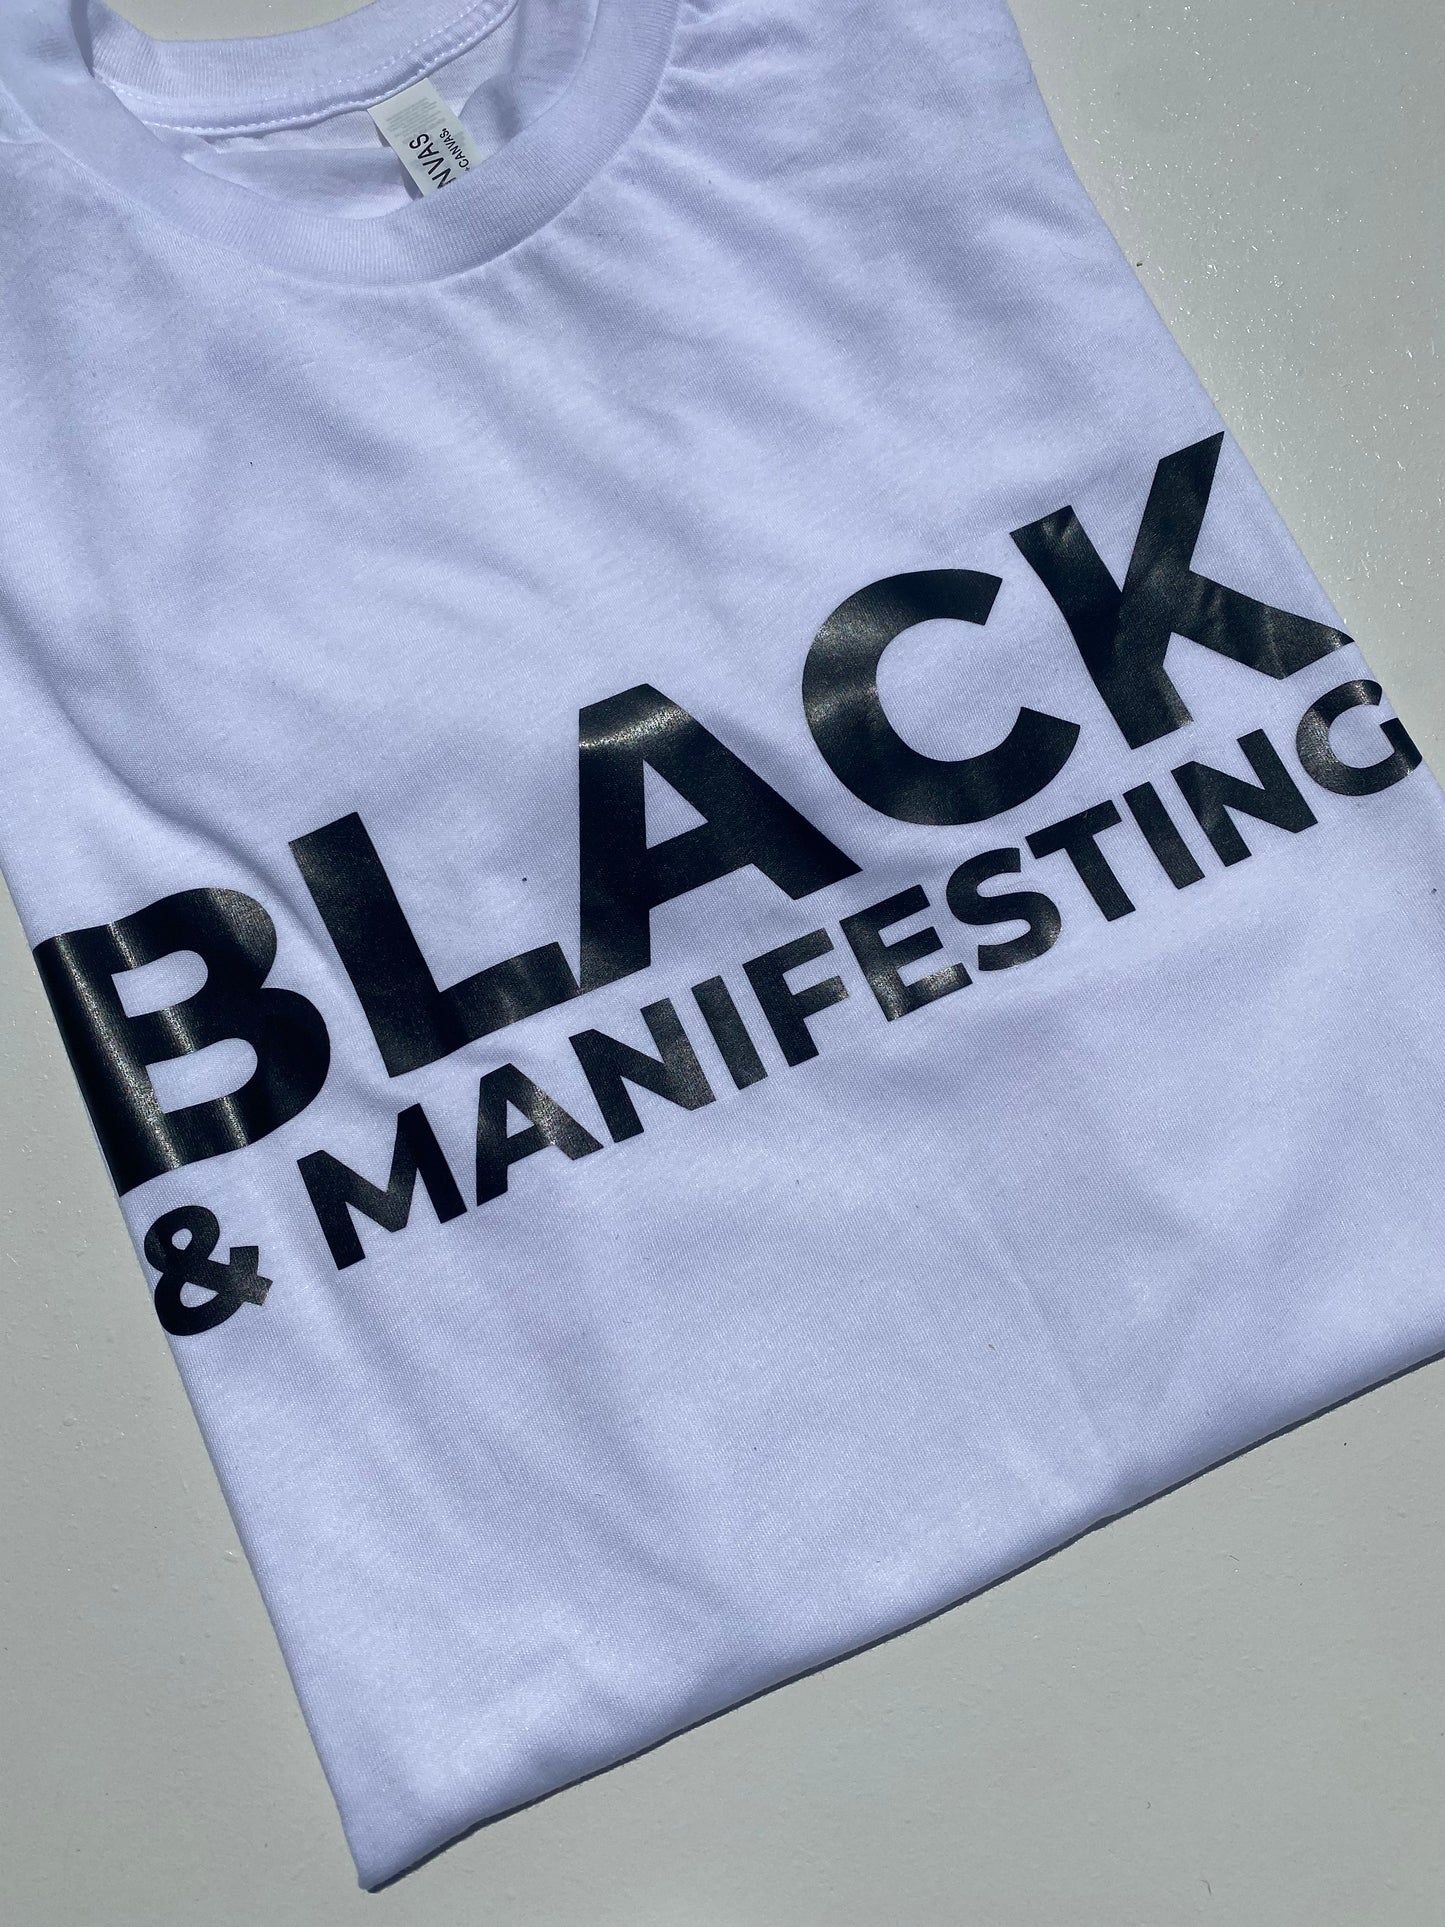 Manifesting Shirt